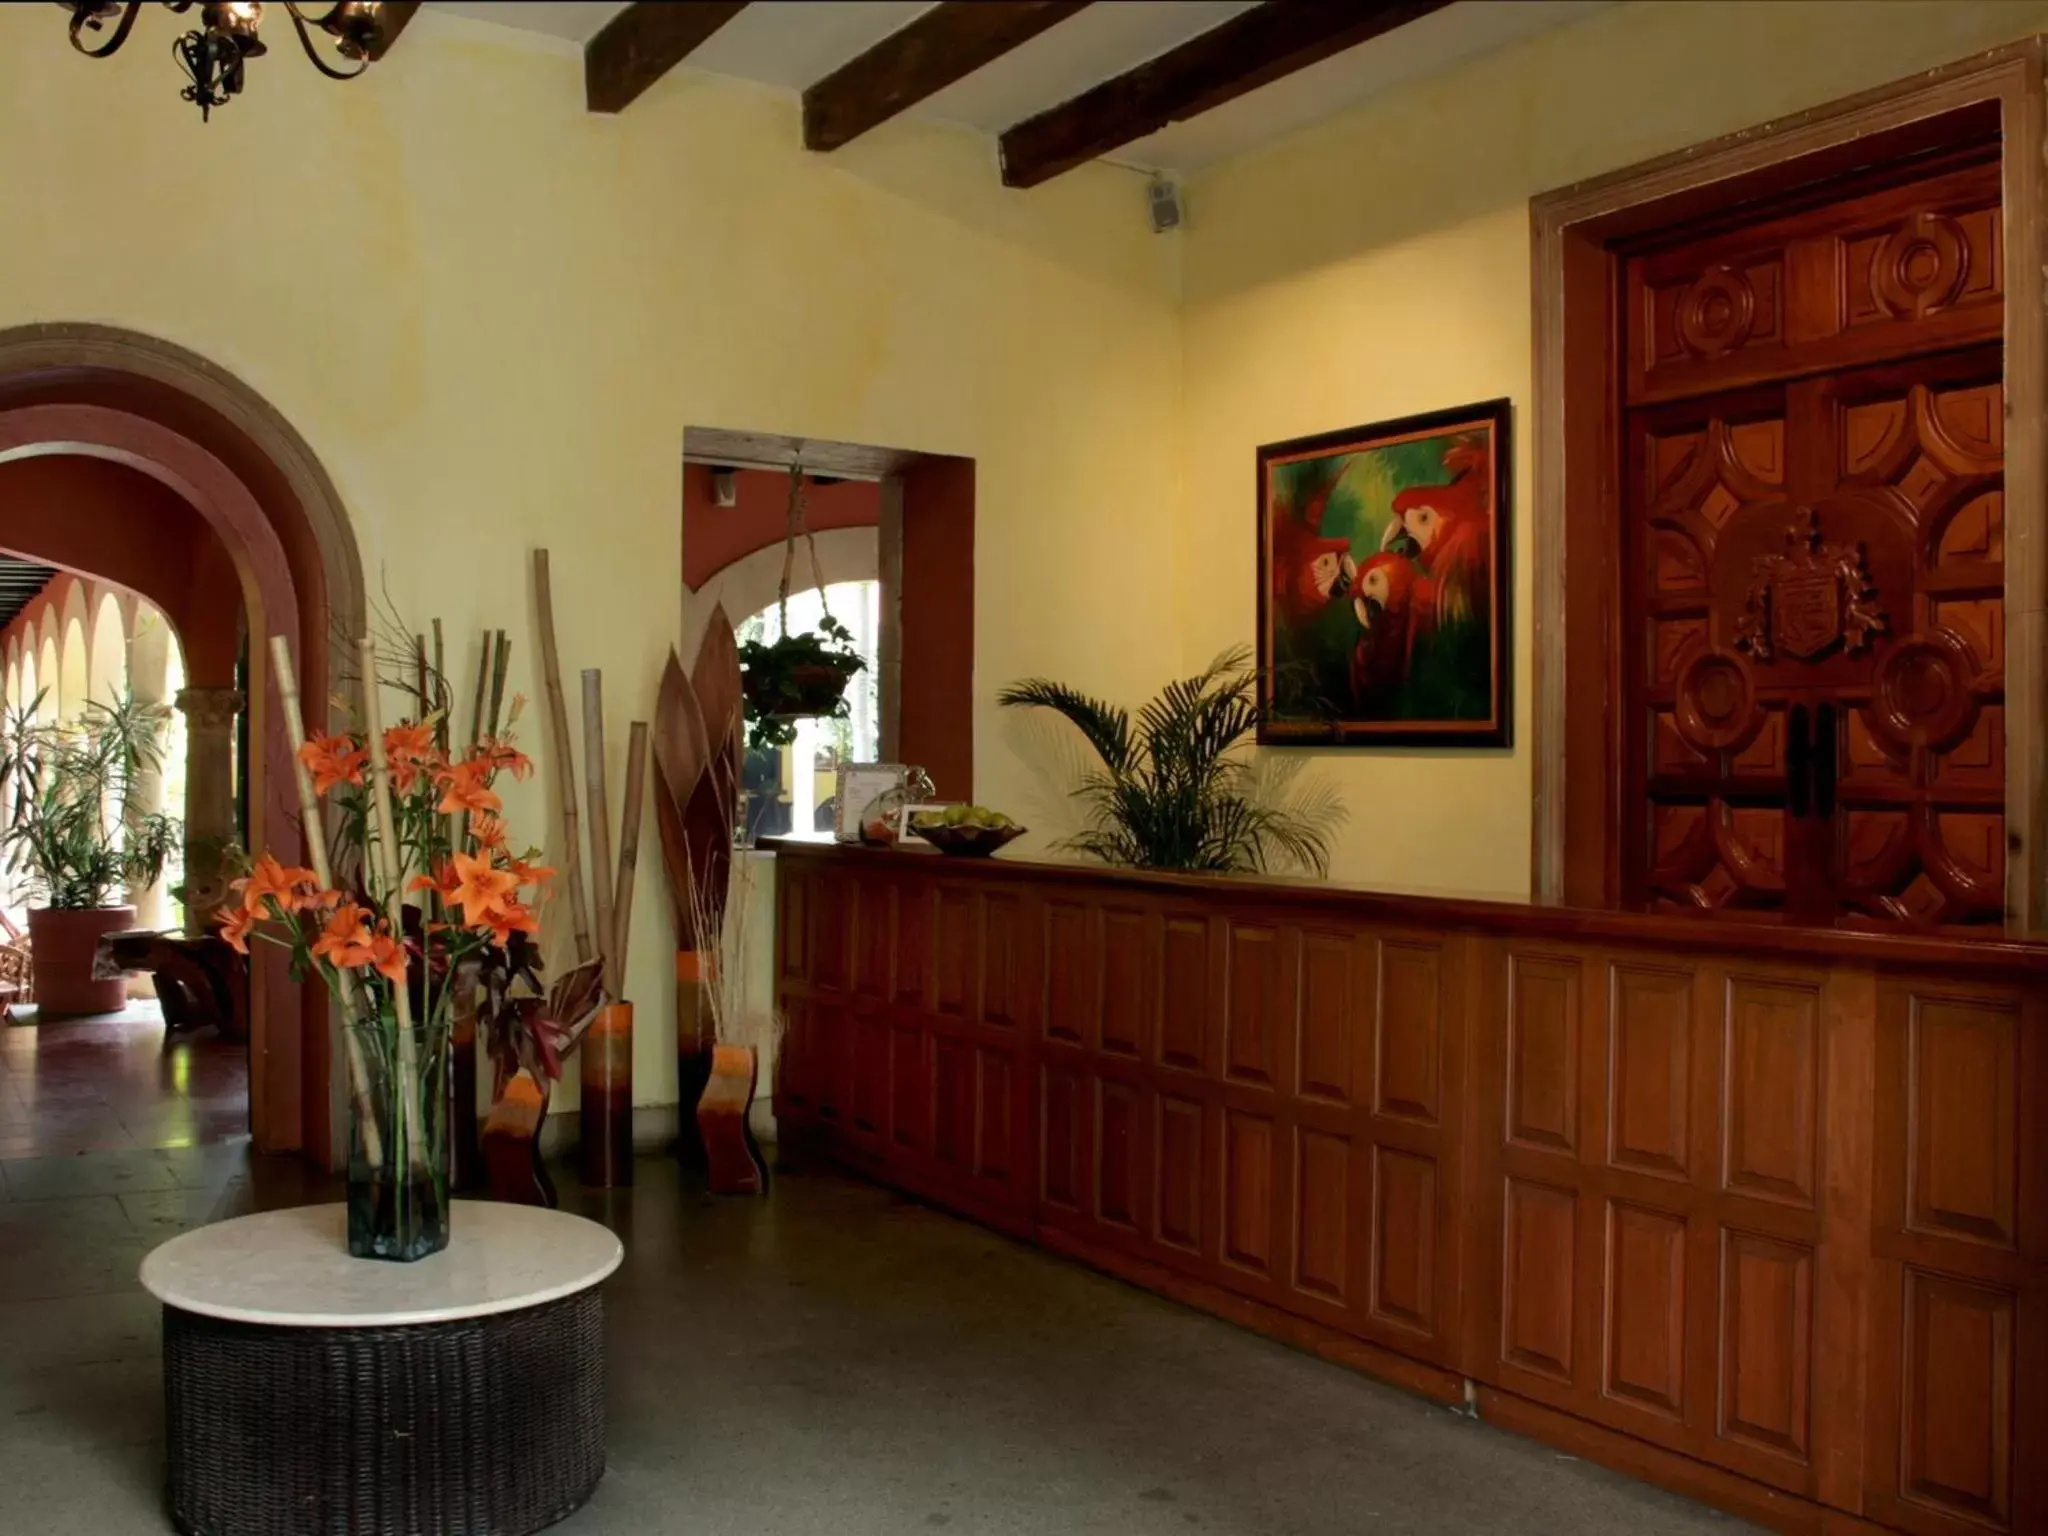 Lobby or reception, Lobby/Reception in Hotel Racquet Cuernavaca